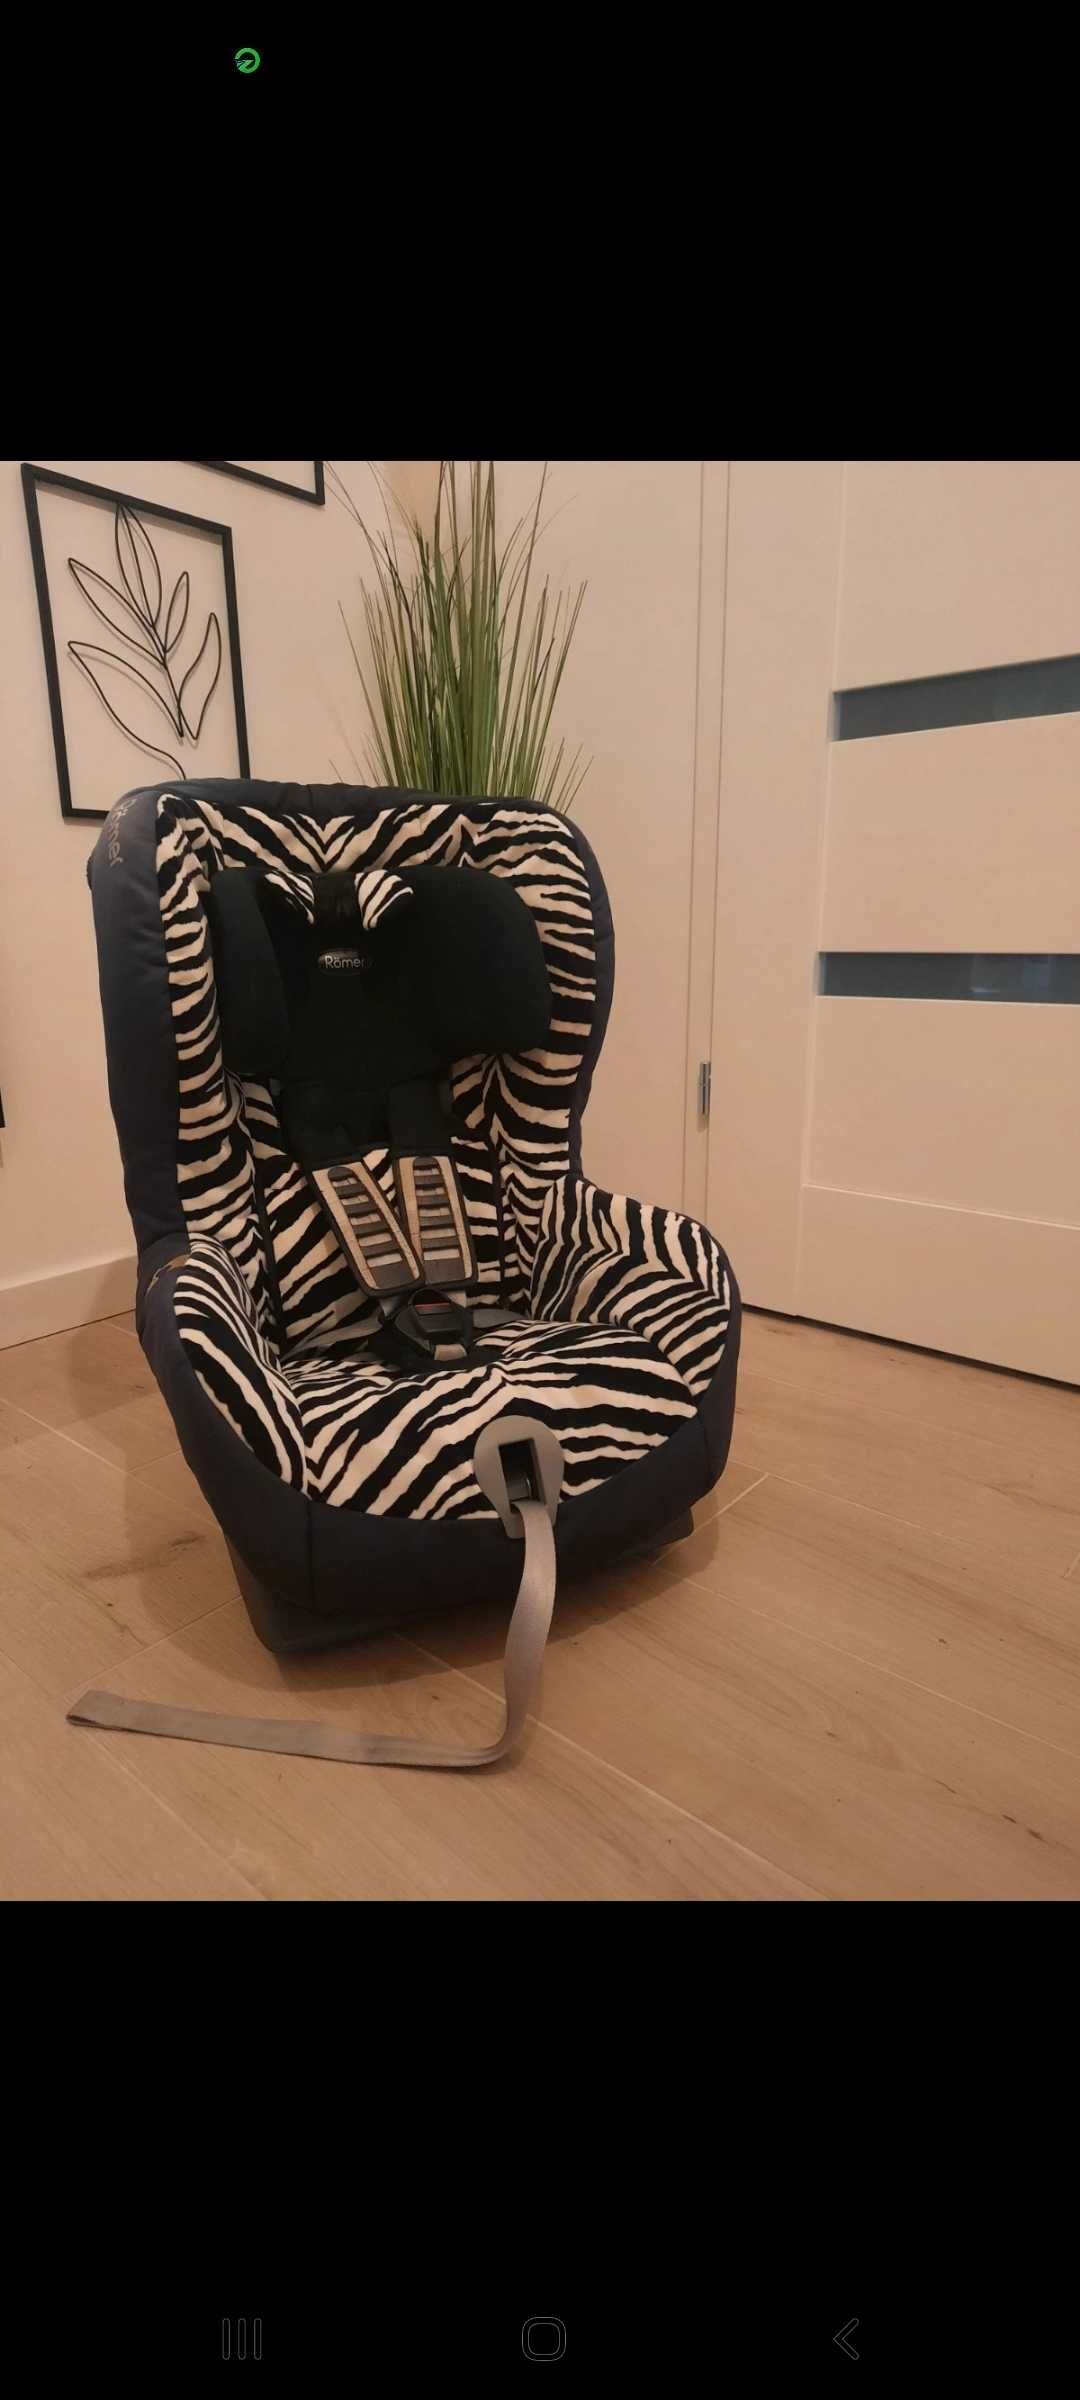 Fotelik Romer King 2 Zebra